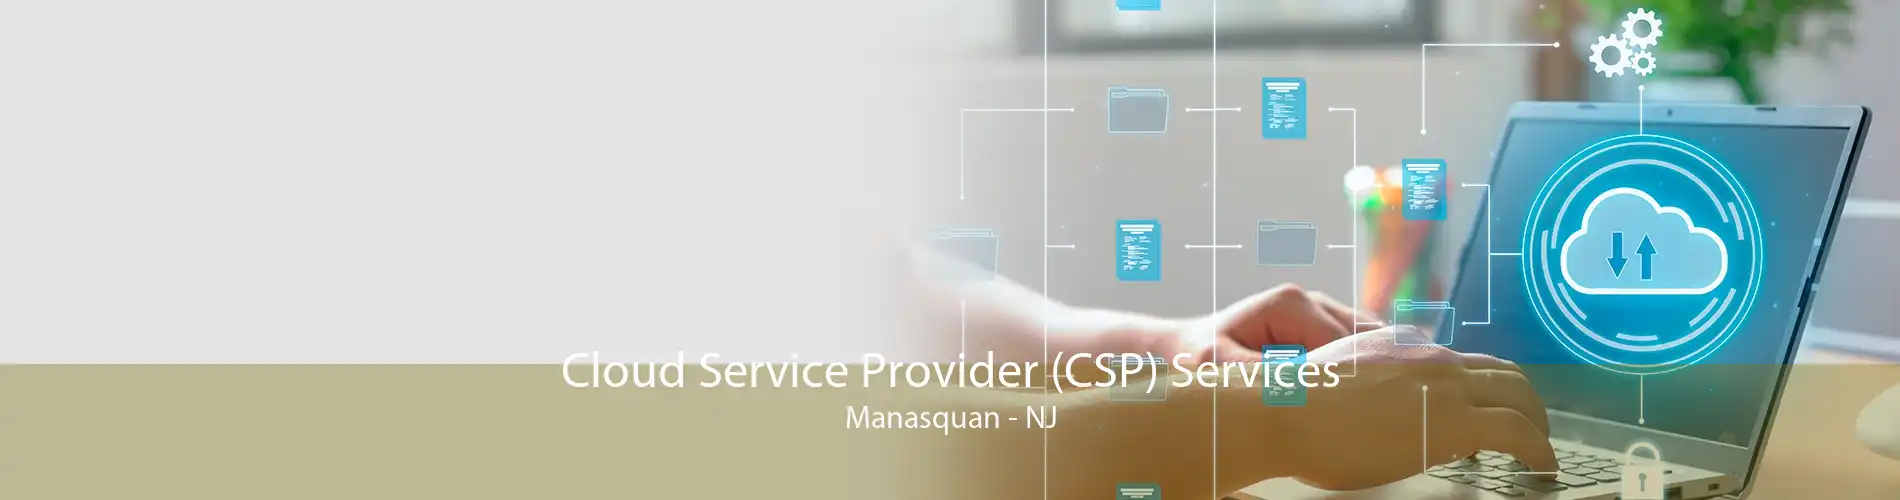 Cloud Service Provider (CSP) Services Manasquan - NJ